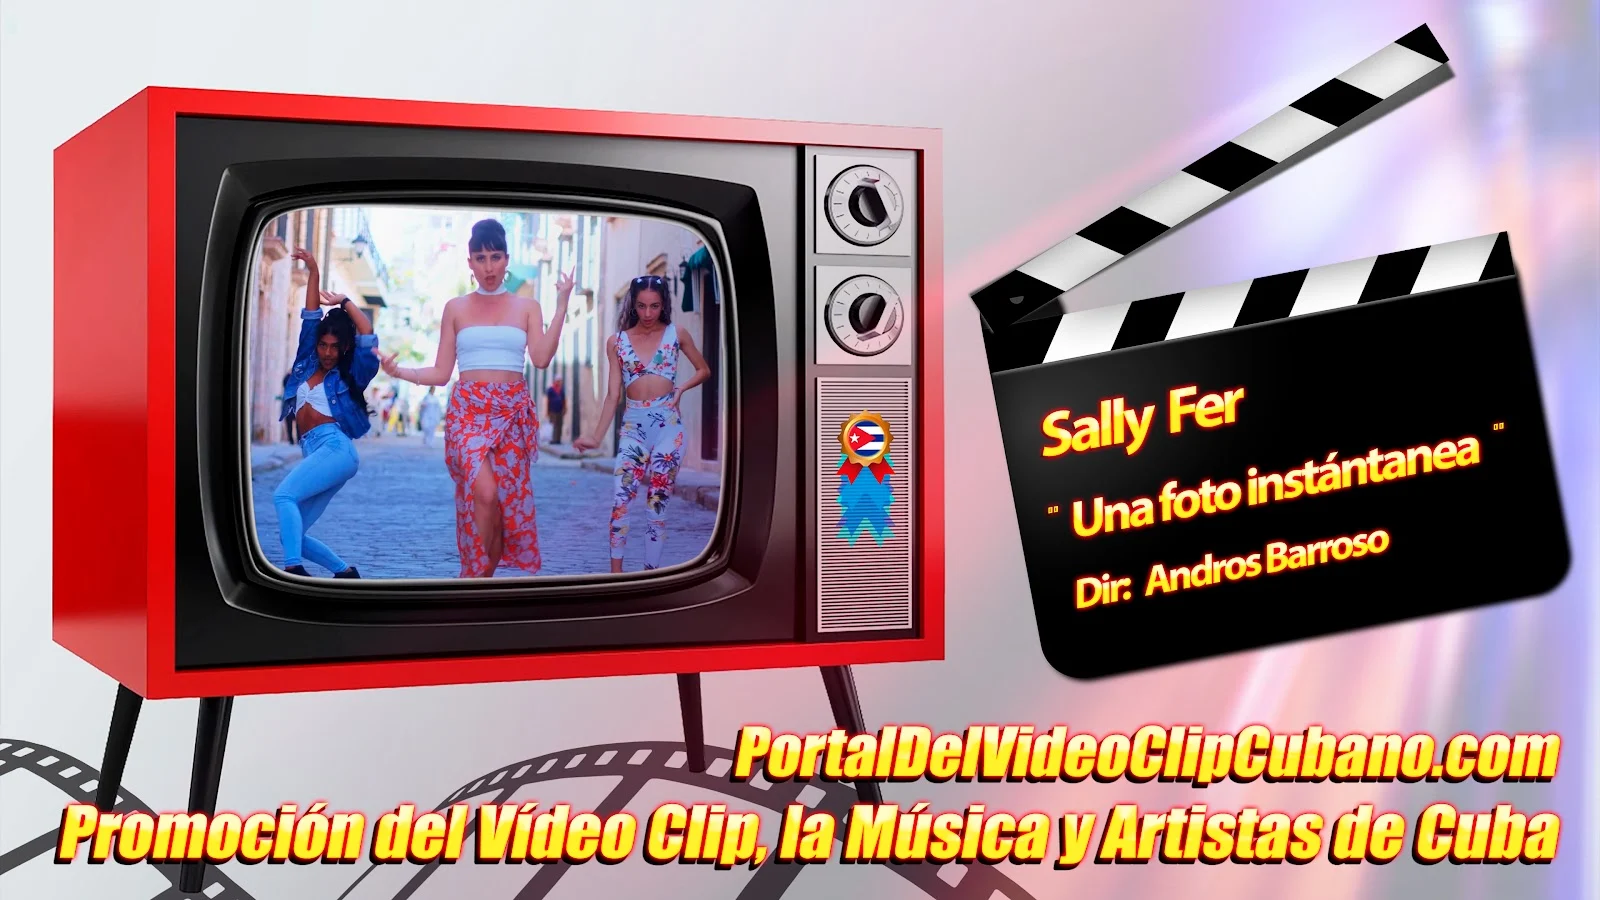 Sally Fer - ¨Una foto instantánea¨ - Director: Andros Barroso. Portal Del Vídeo Clip Cubano. Música Urbana Cubana. Canción. CUBA.